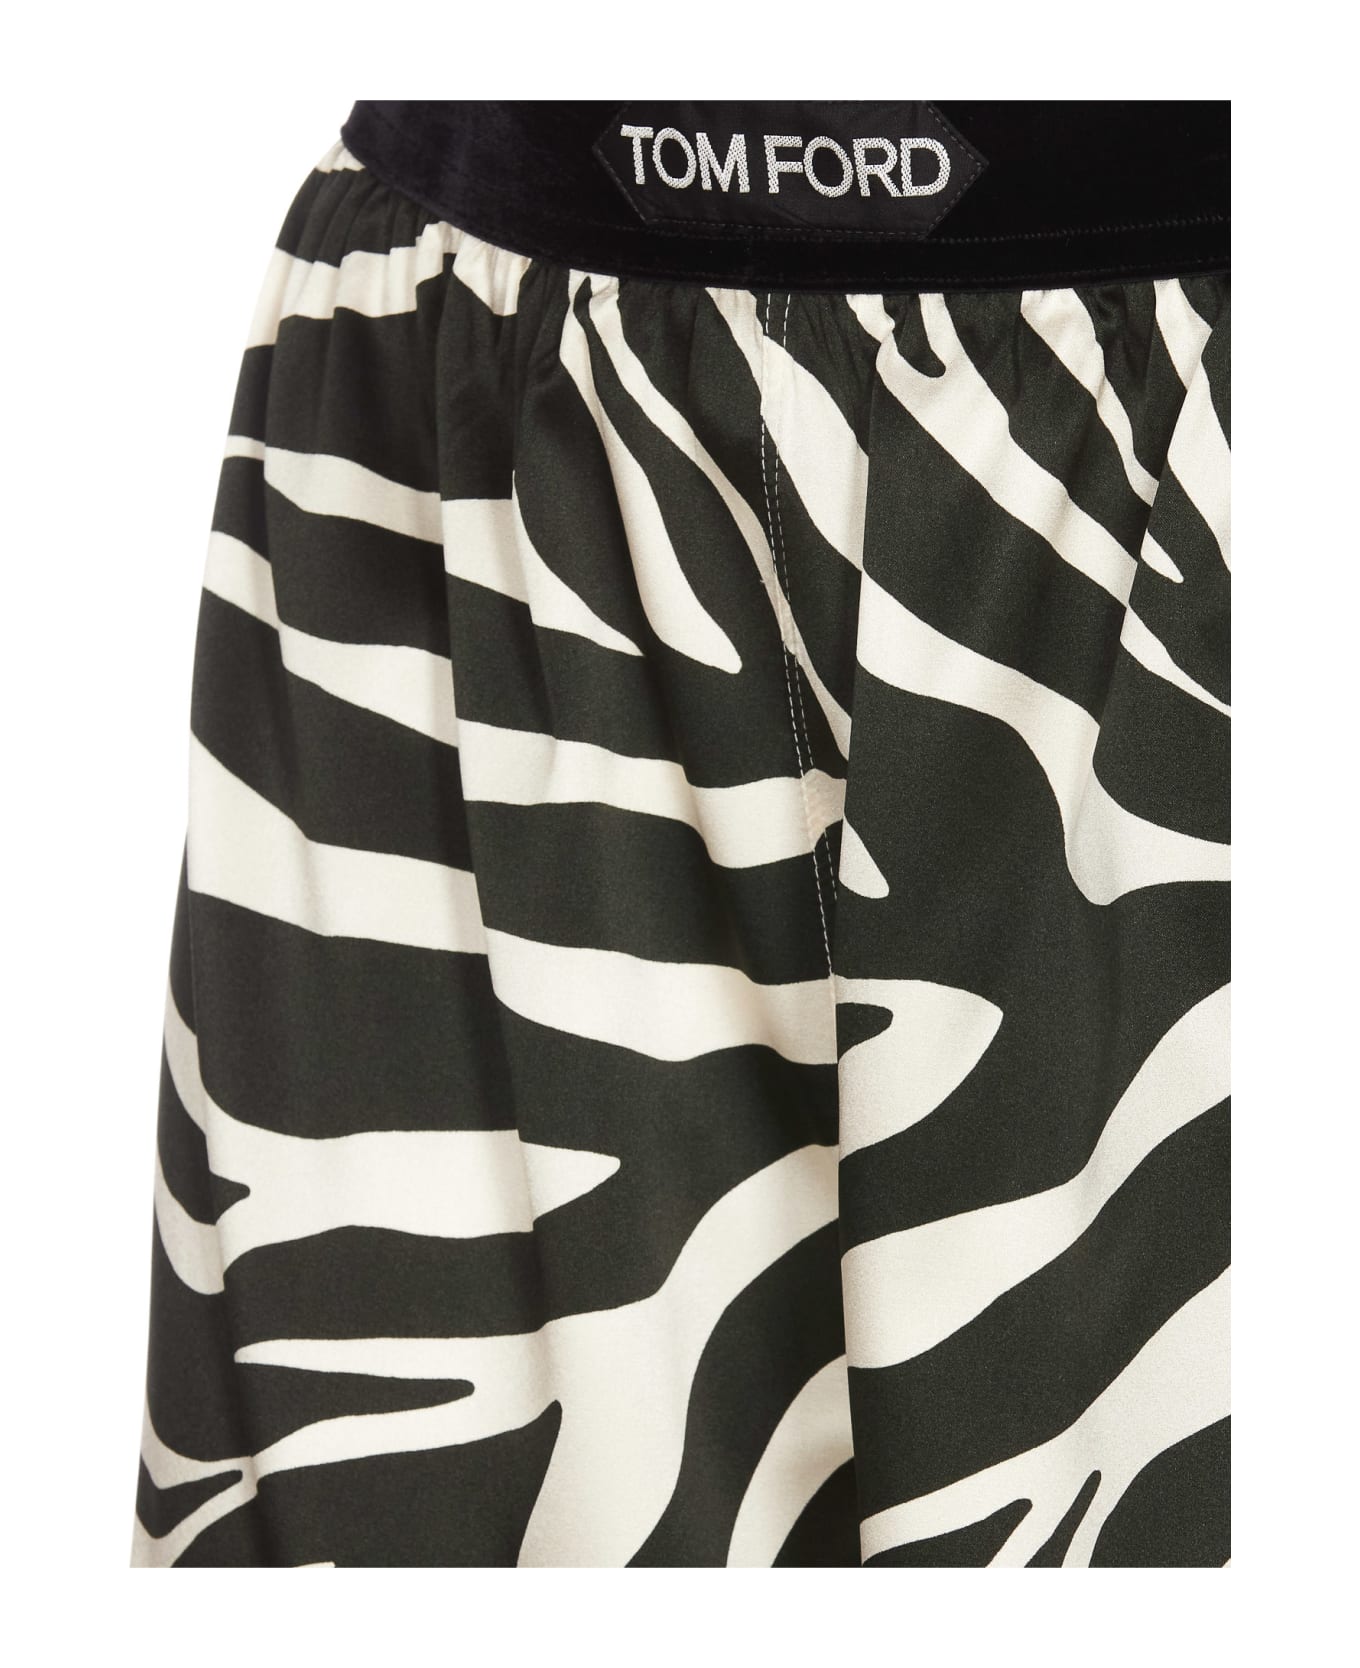 Tom Ford Zebra Print Shorts - Black ショートパンツ